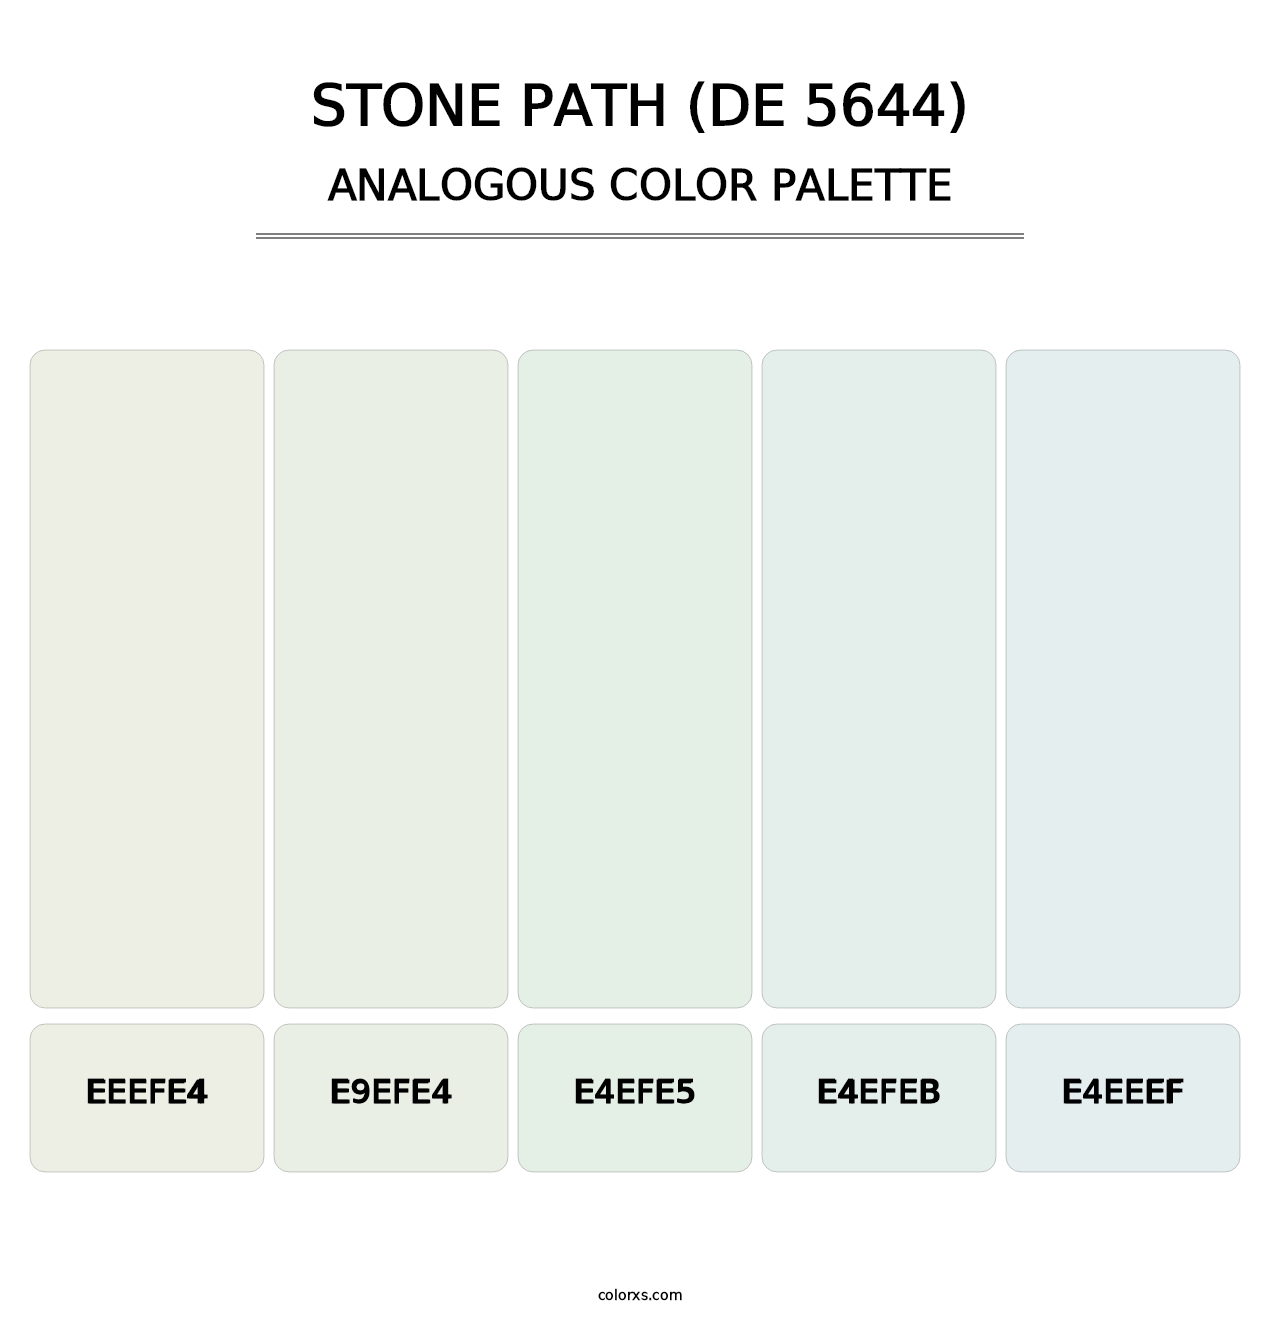 Stone Path (DE 5644) - Analogous Color Palette